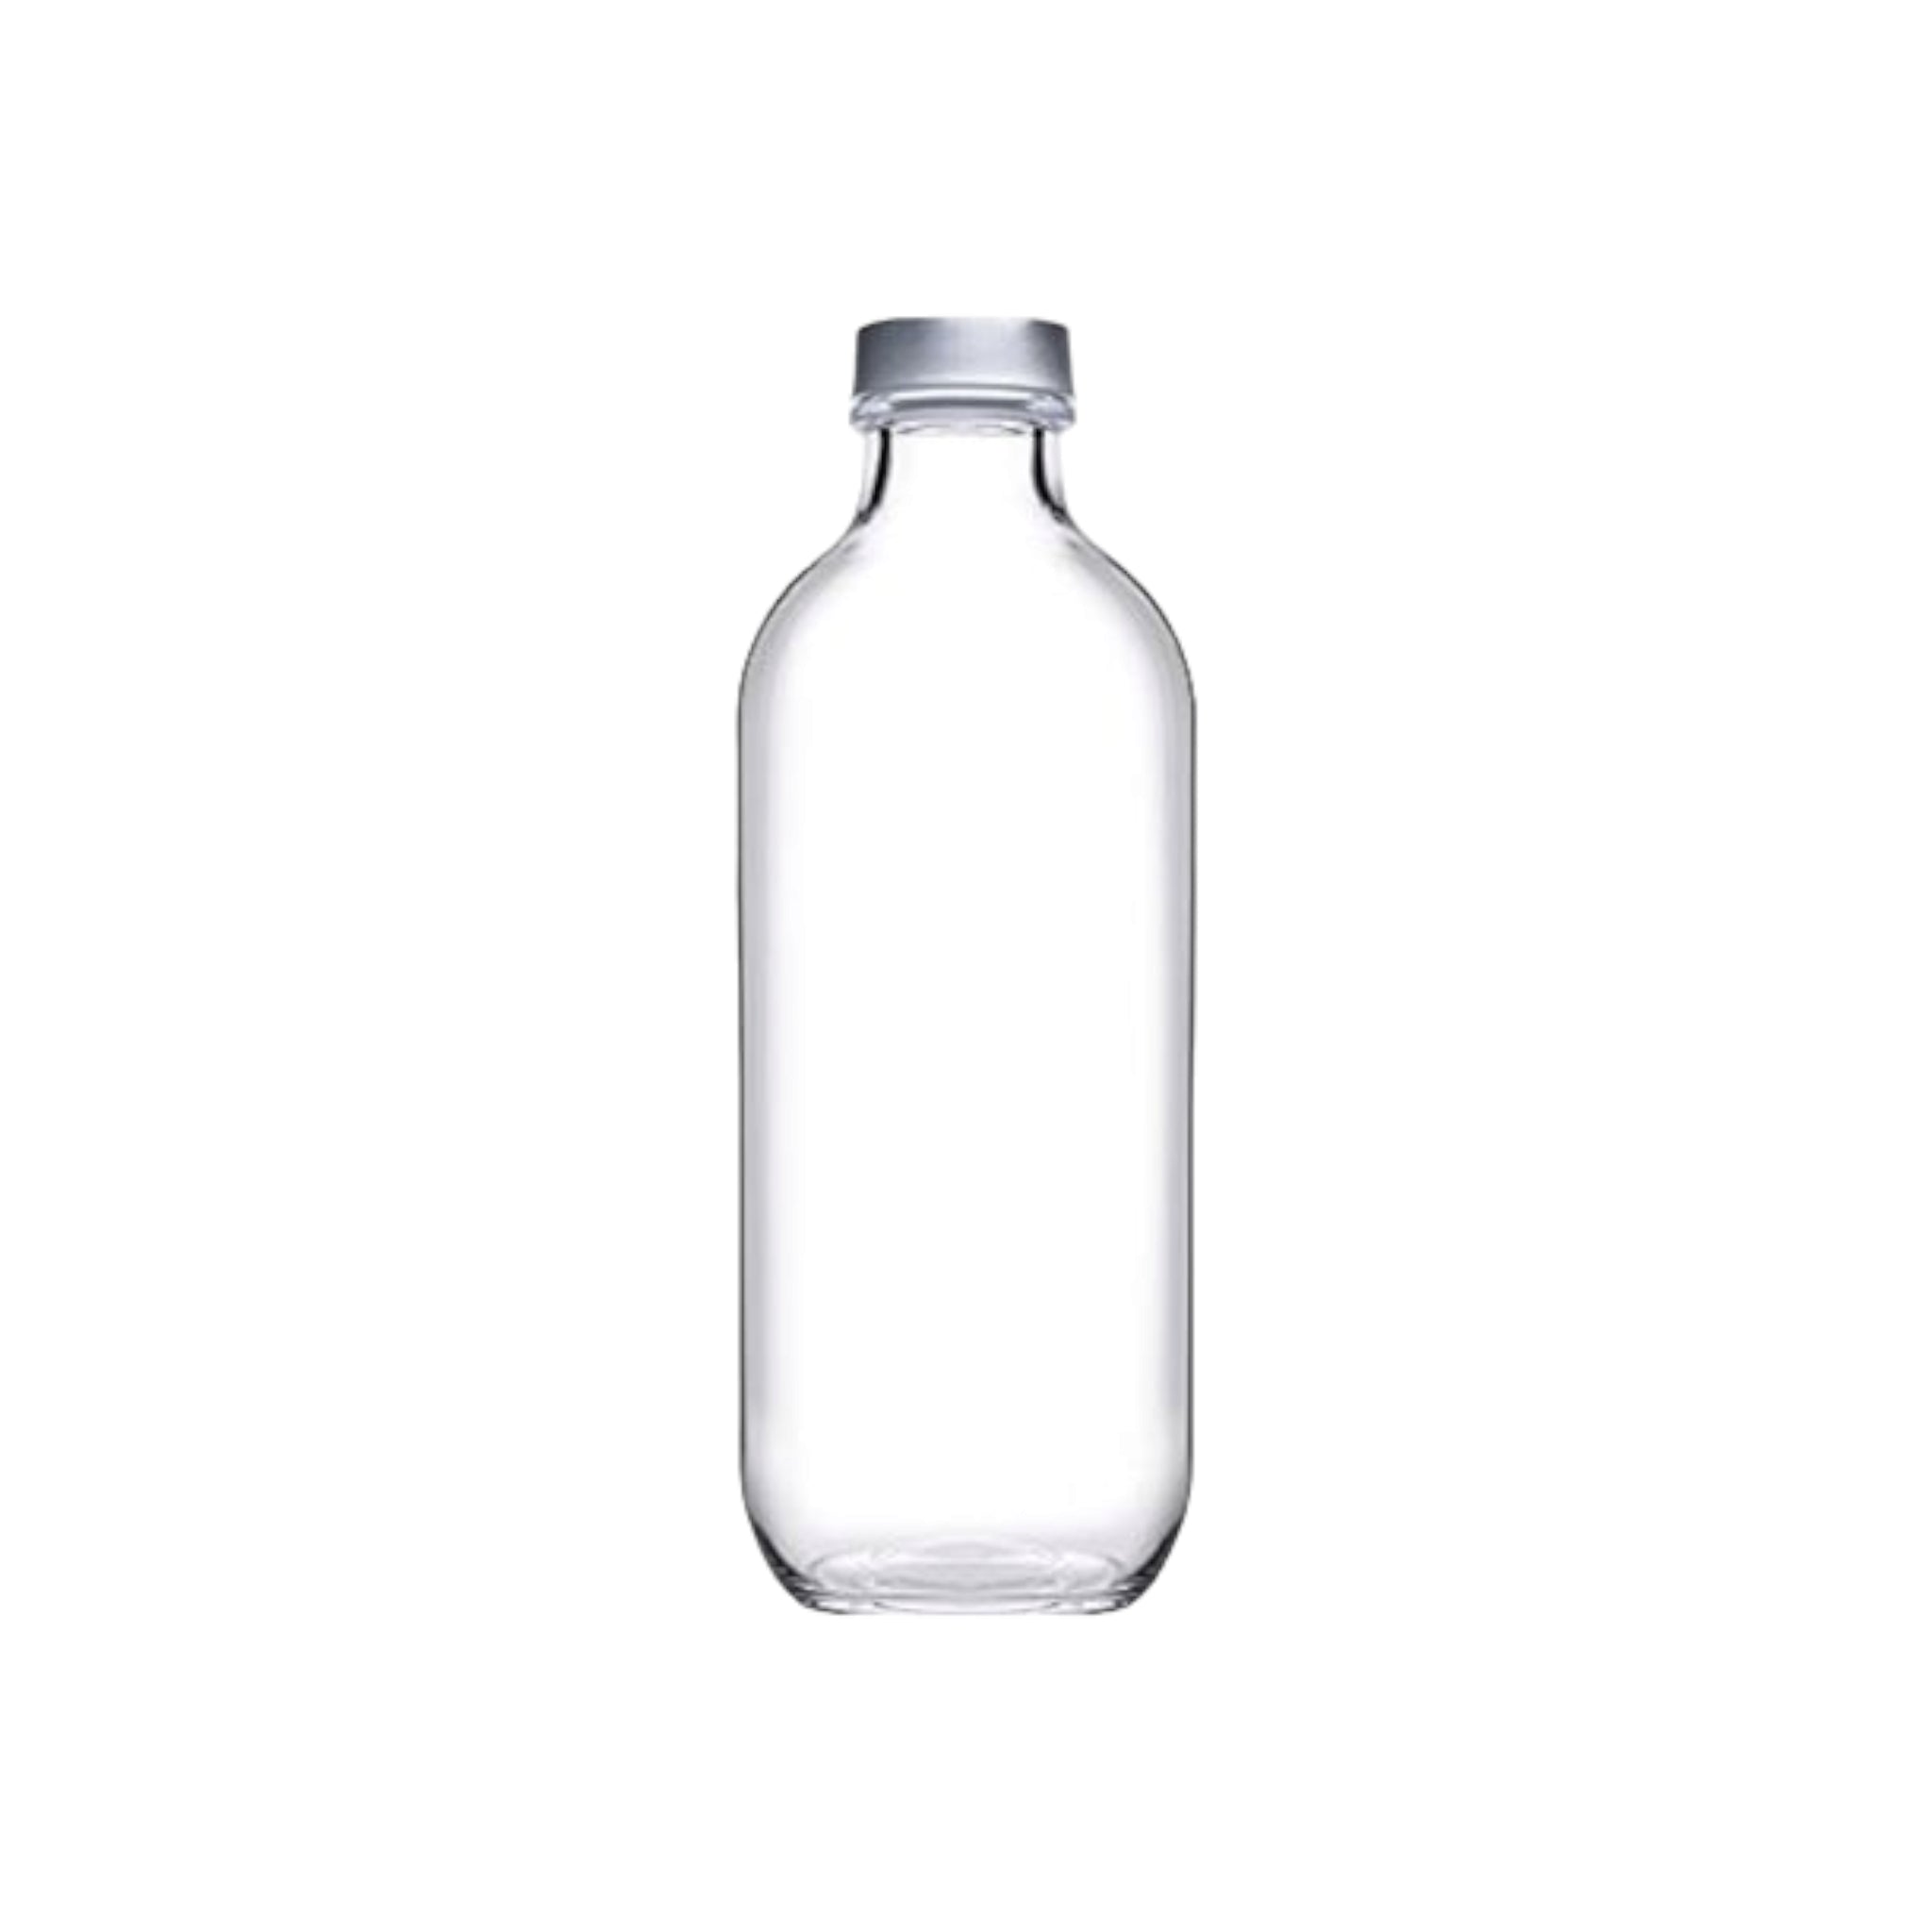 Pasabahce Iconic Glass Fridge Bottle 340ml 24001